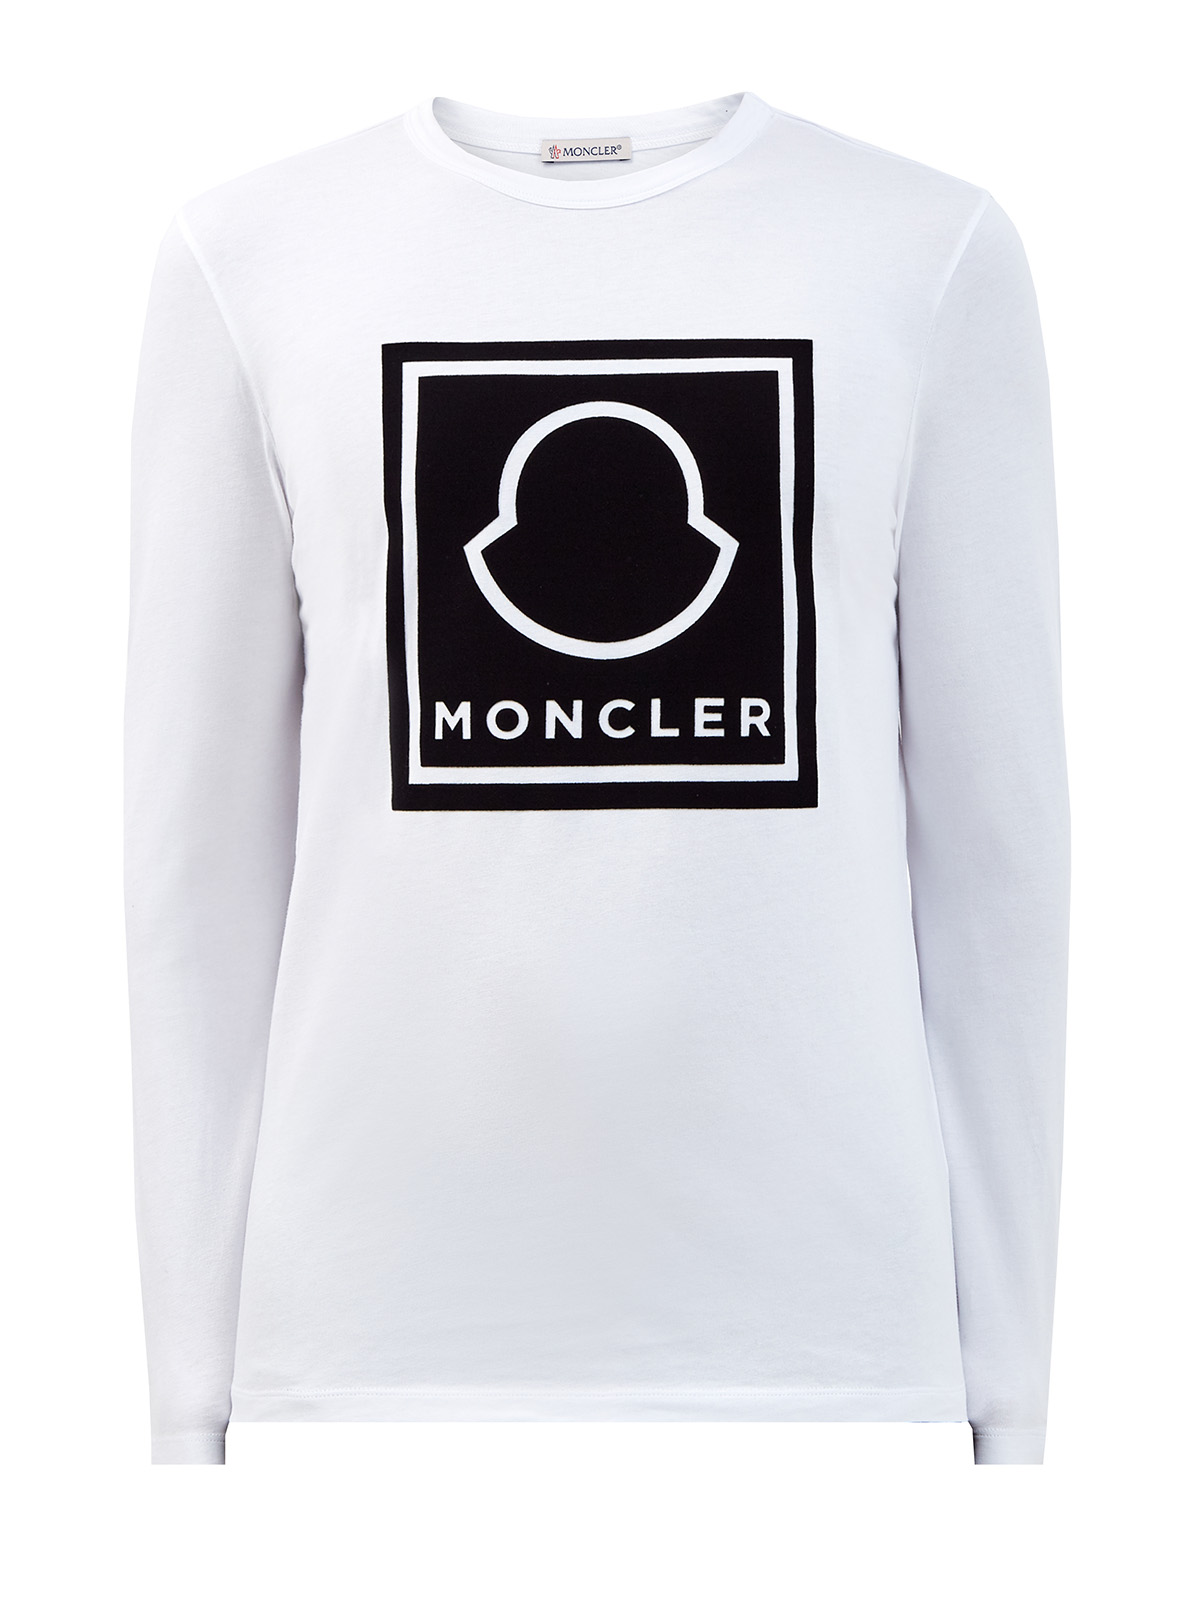 Хлопковый лонгслив с макро-логотипом бренда MONCLER, цвет белый, размер L;2XL;M;XL - фото 1